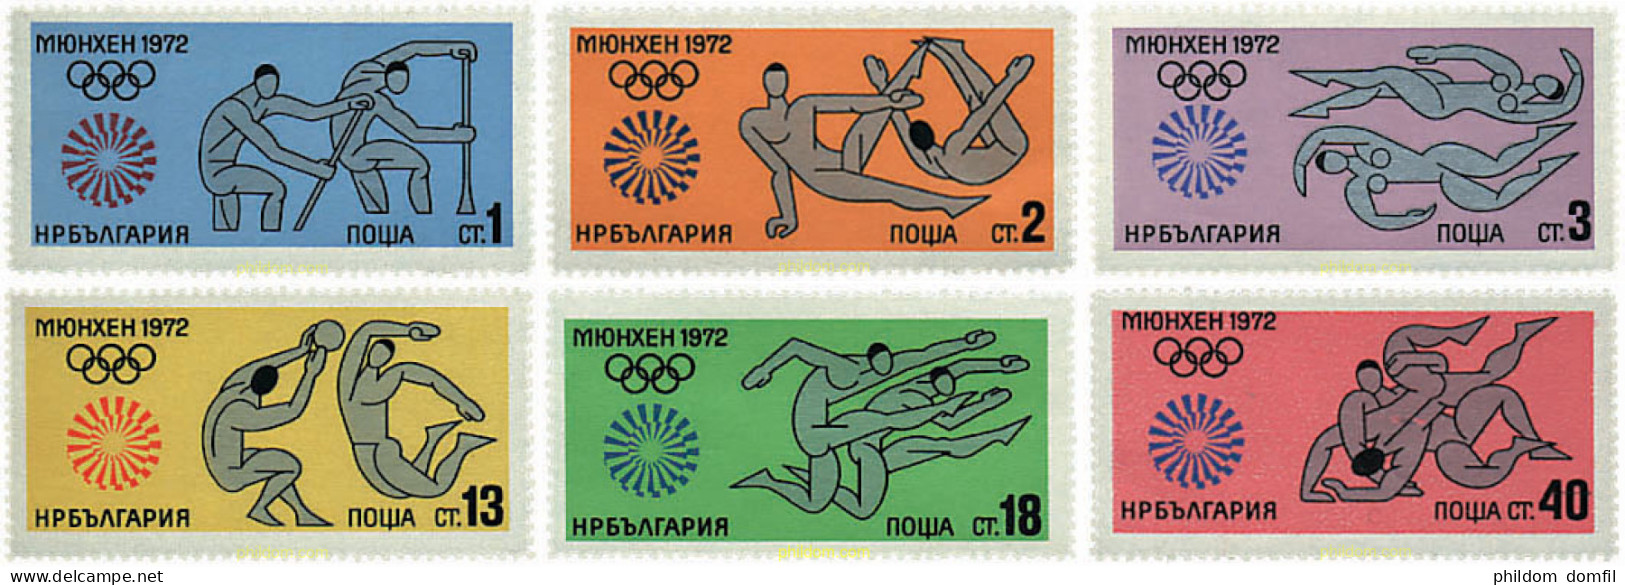 81458 MNH BULGARIA 1972 20 JUEGOS OLIMPICOS VERANO MUNICH 1972 - Unused Stamps